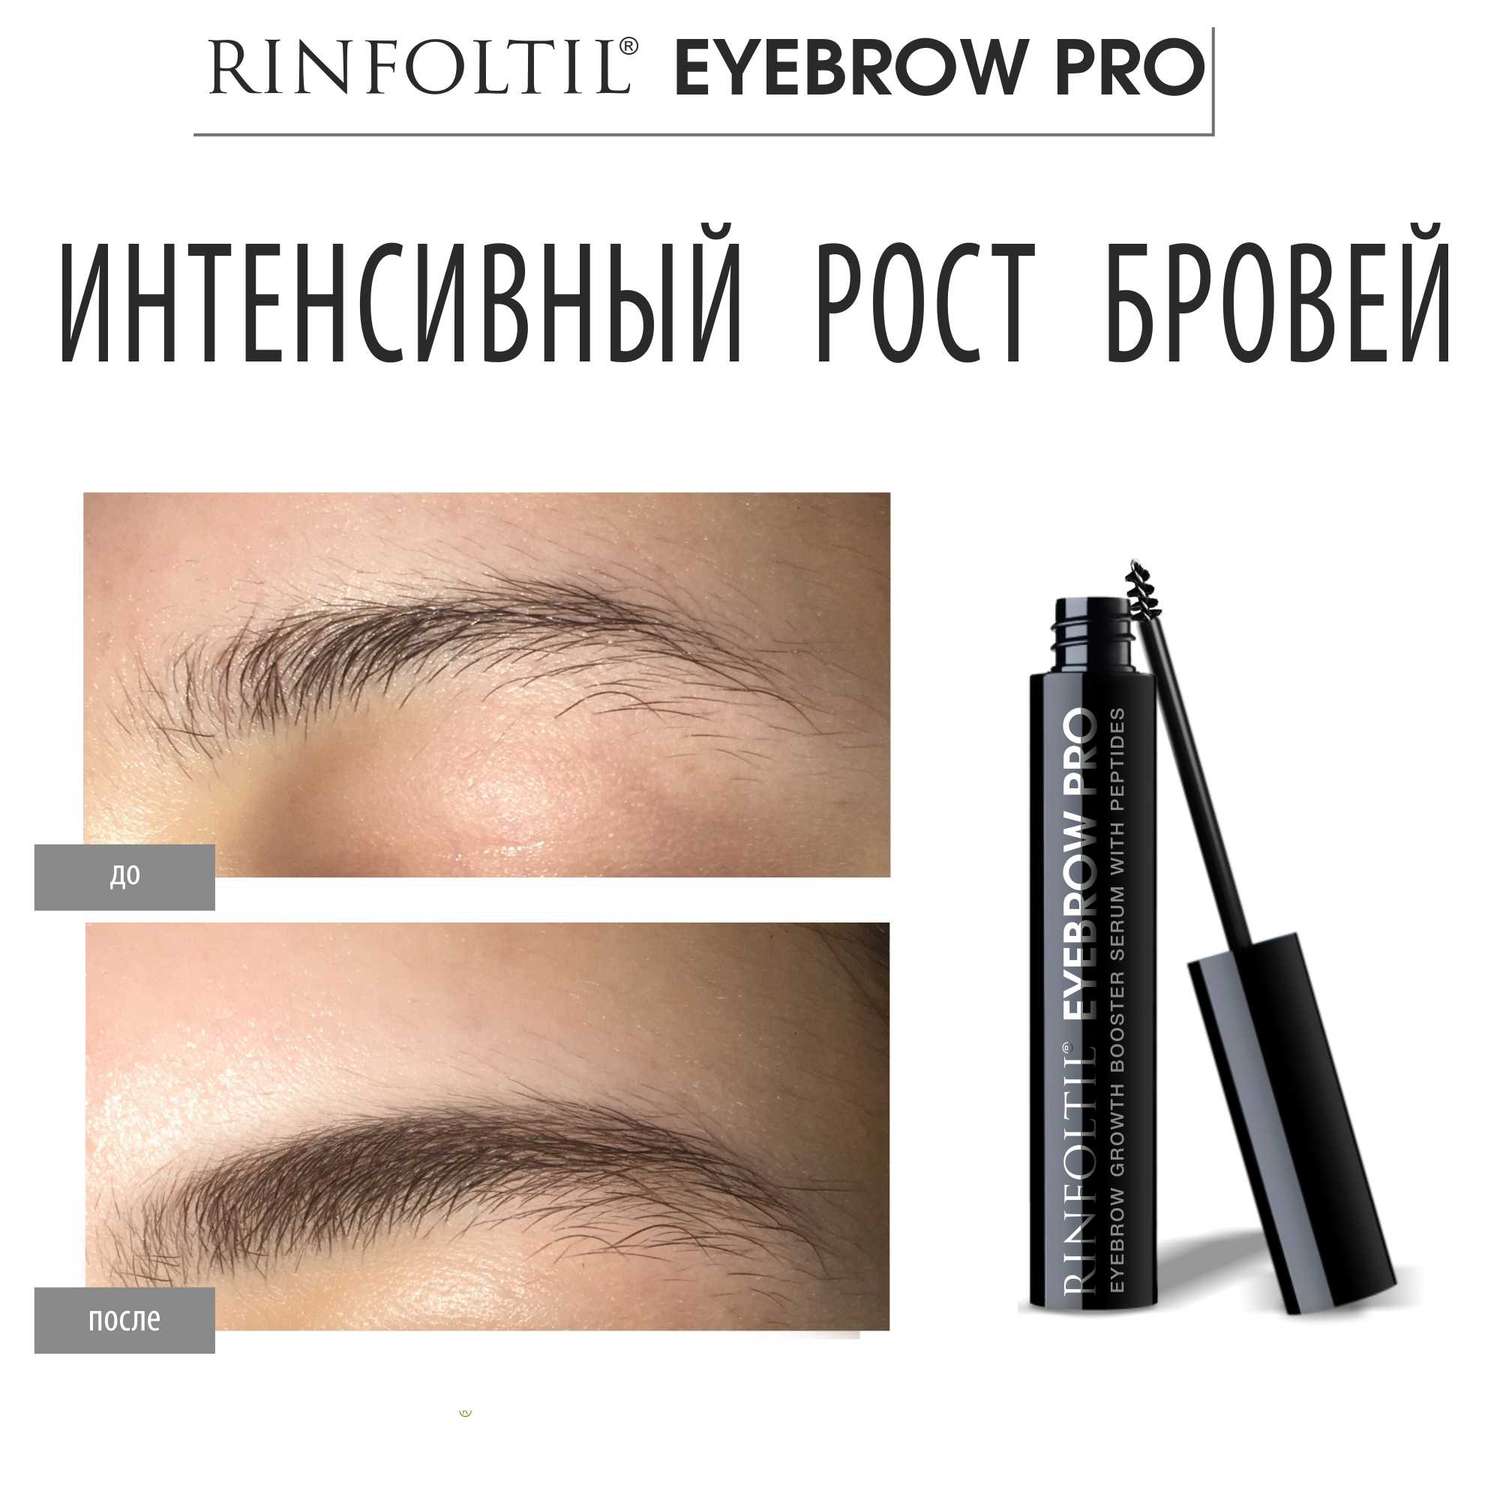 Сыворотка-бустер Rinfoltil Eyebrow PRO для роста бровей с пептидами 5 мл - фото 5